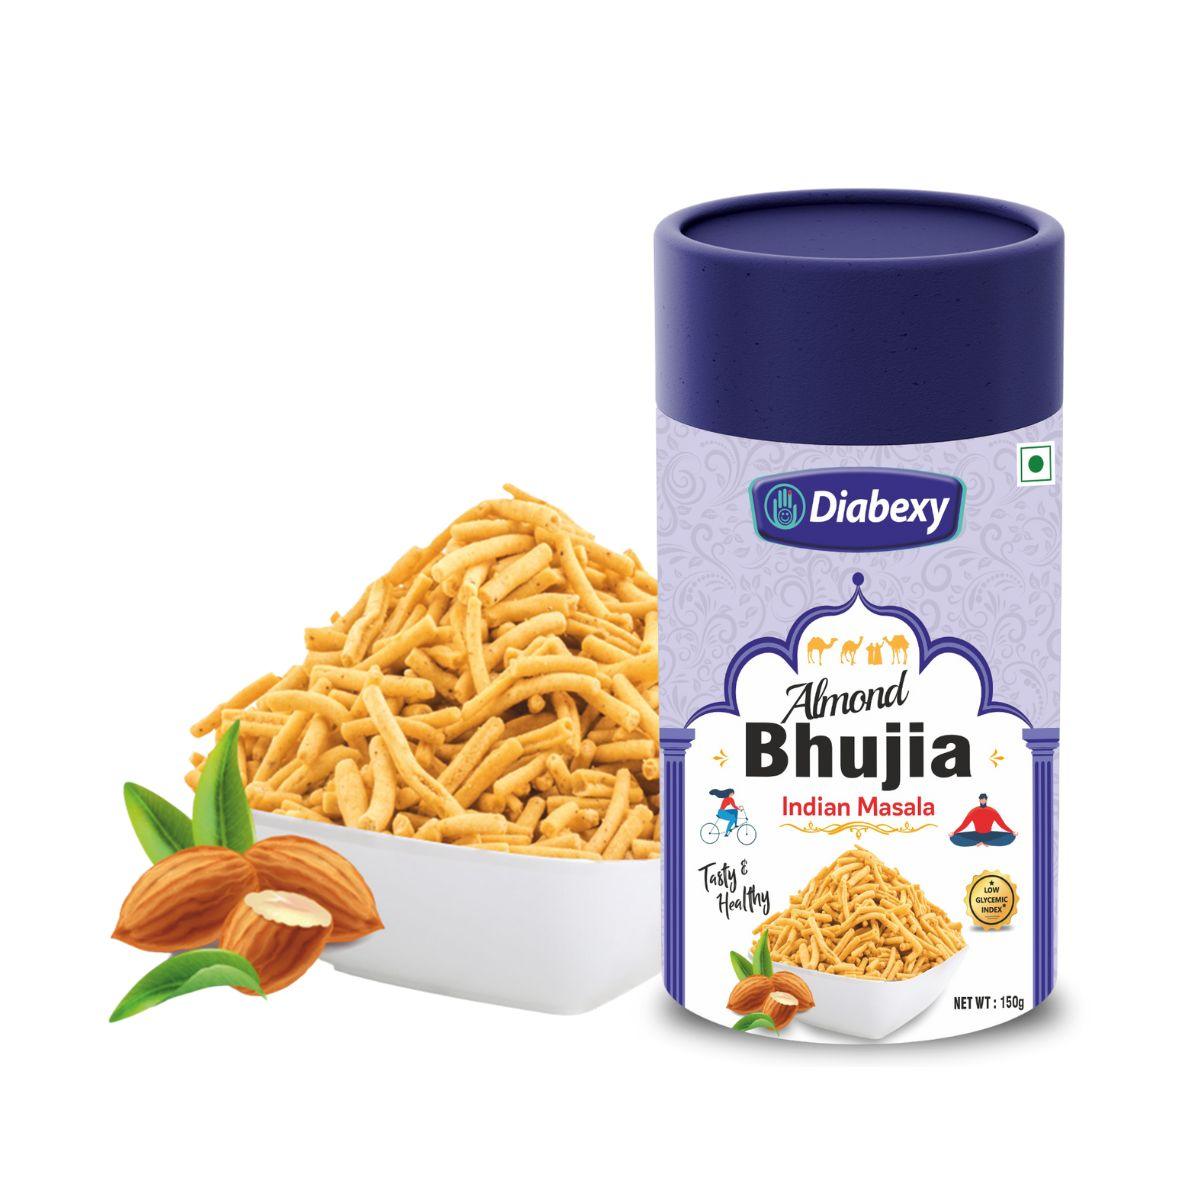 Diabexy Almond Bhujia | Indian Masala Flavor - Diabexy